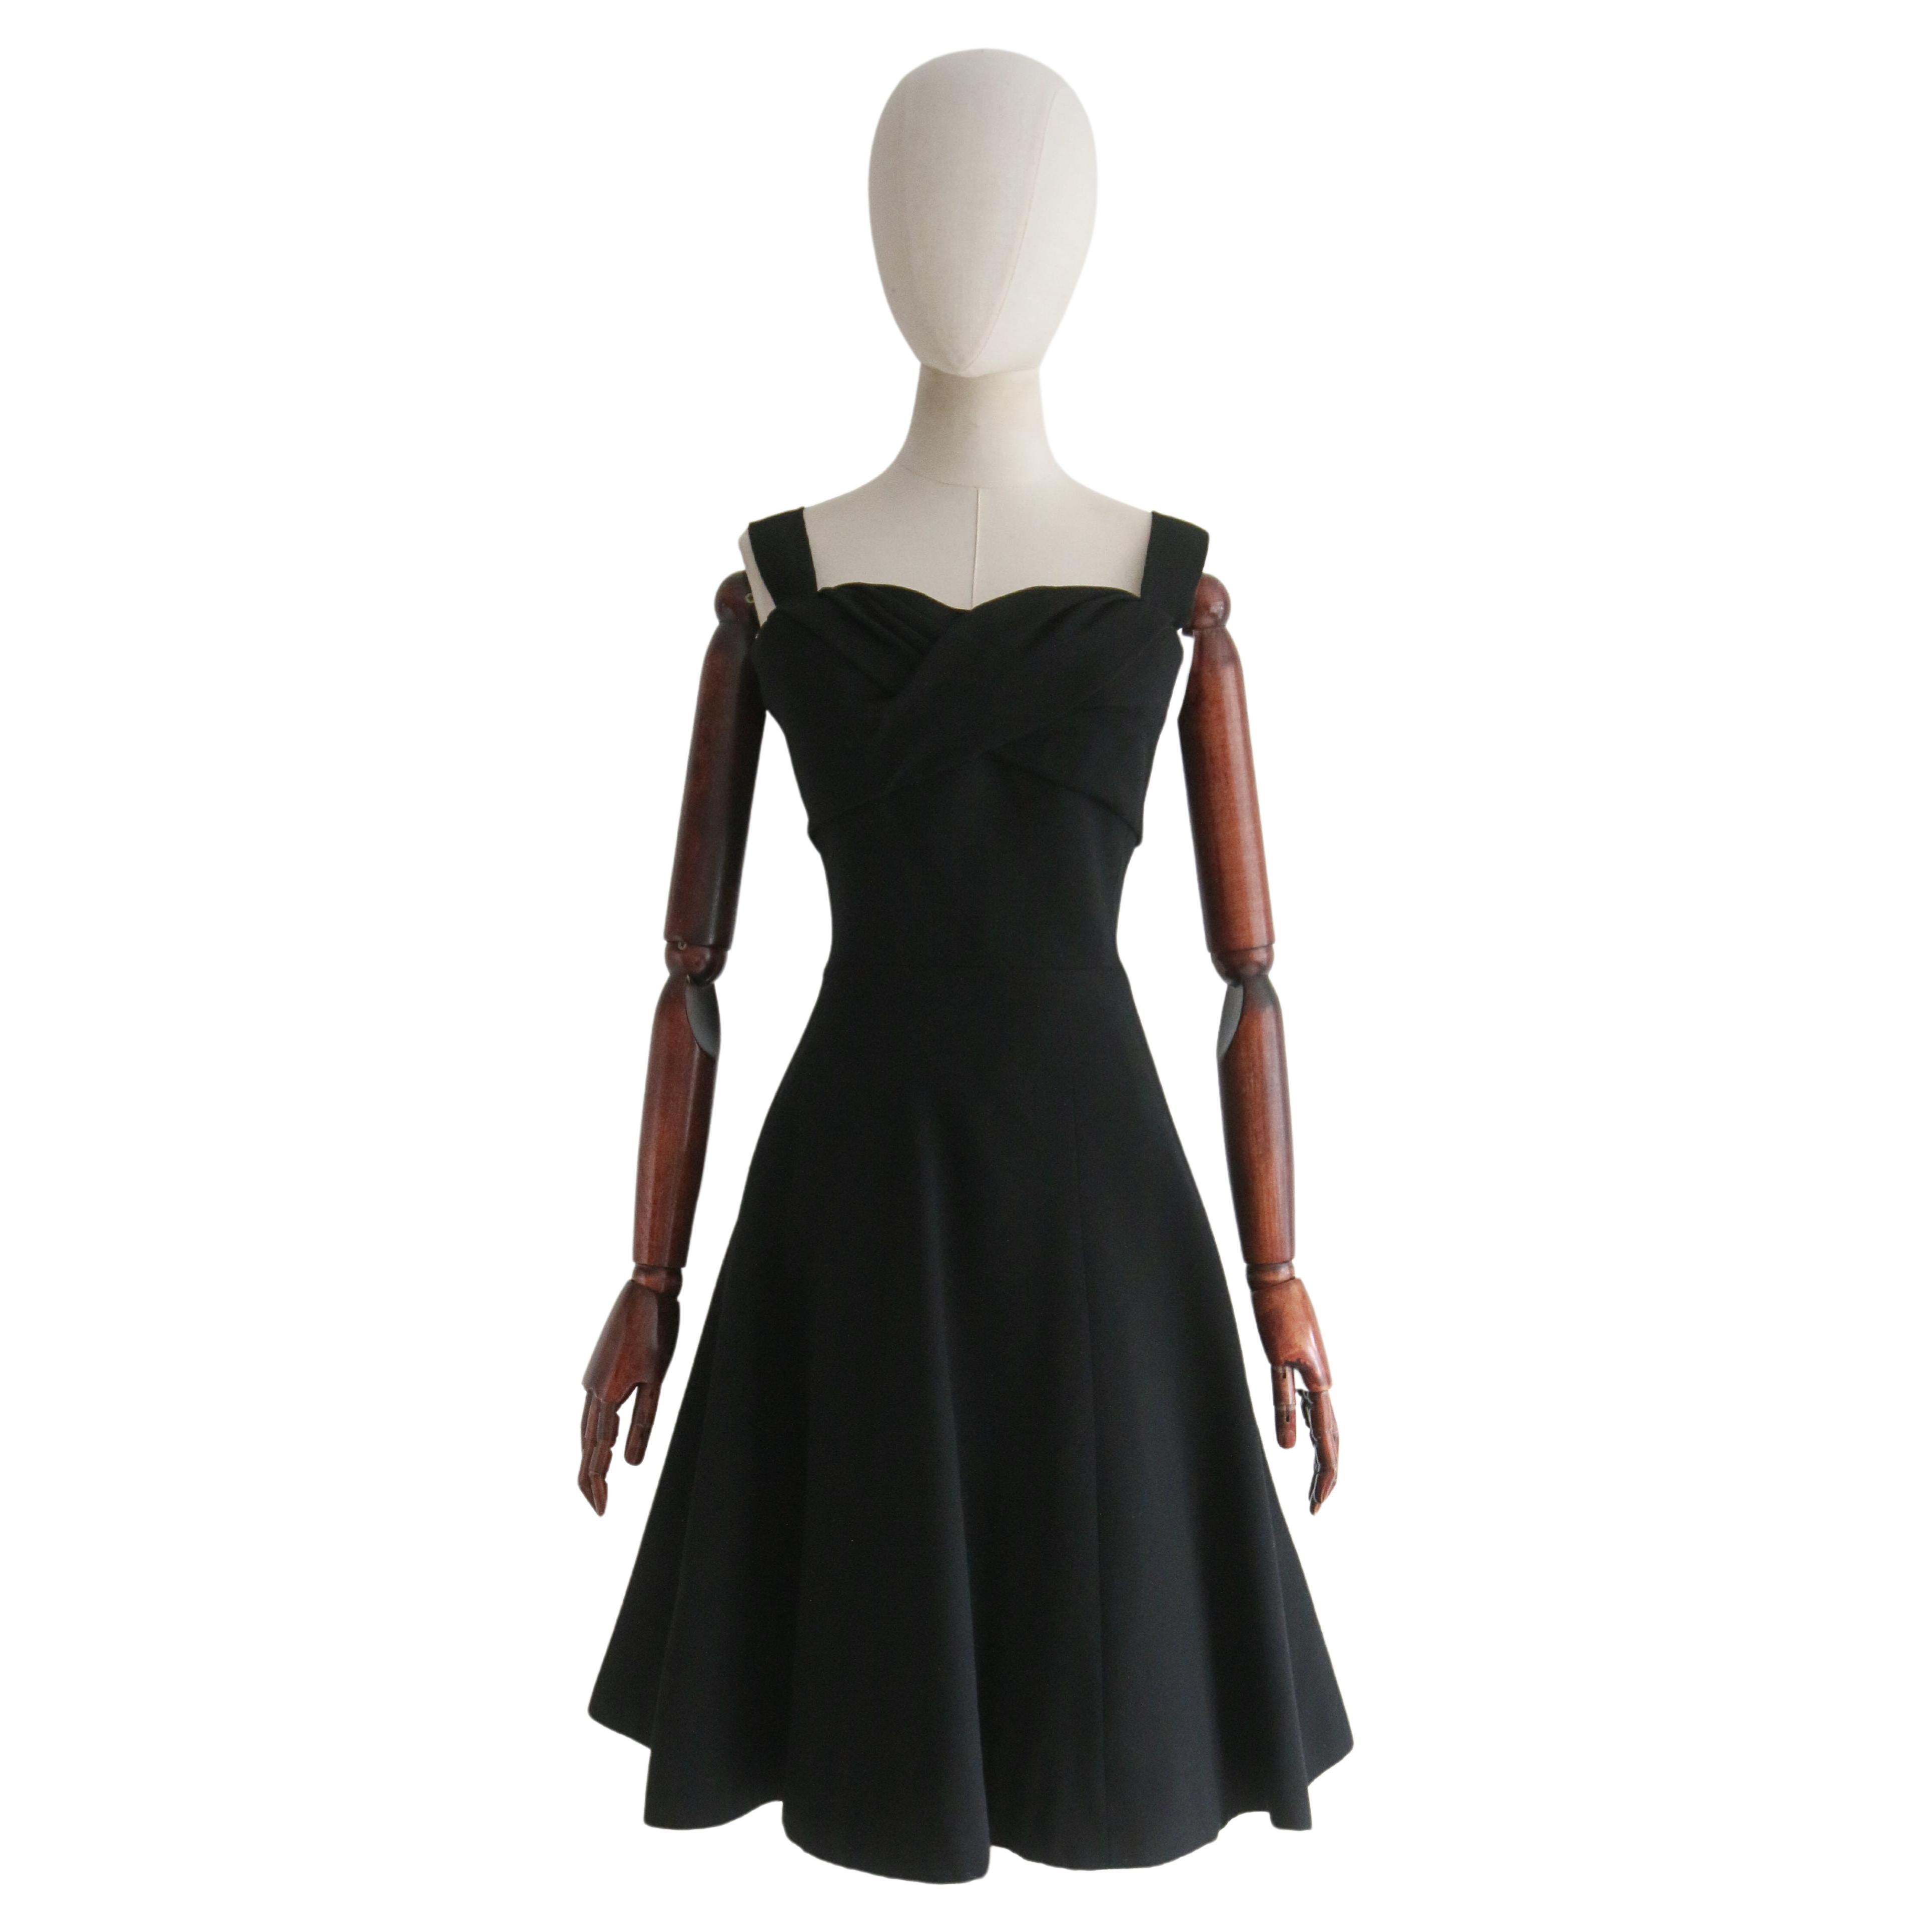  Vintage Late 1950's Black Christian Dior Dress UK 8 US 4